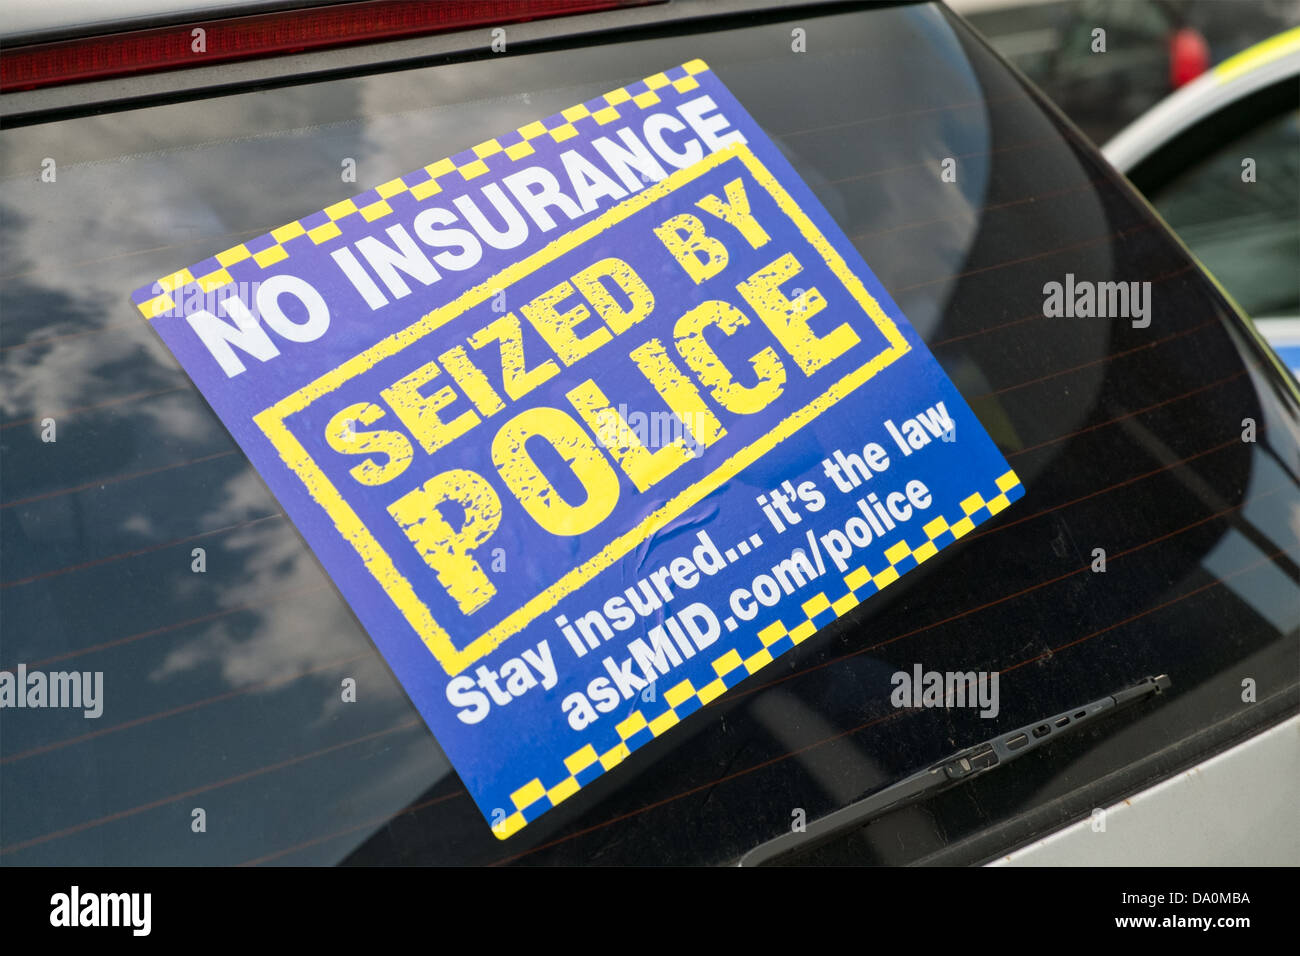 Polizei-Aufkleber auf Auto für Telefon 101 weniger dringende Anrufe, Wales,  UK Stockfotografie - Alamy